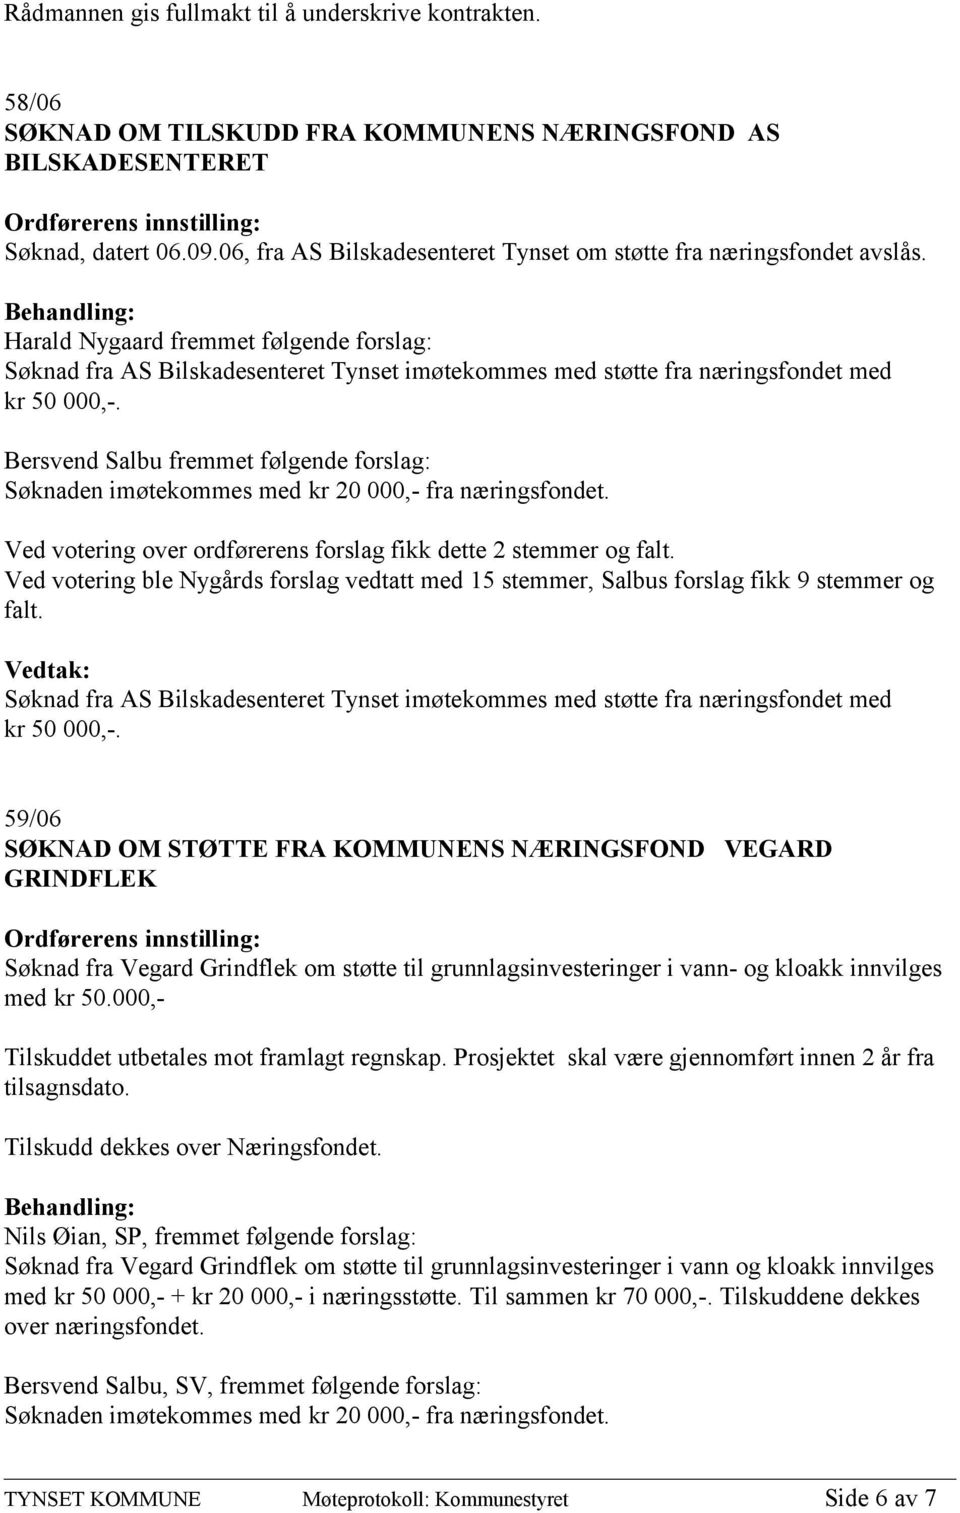 Harald Nygaard fremmet følgende forslag: Søknad fra AS Bilskadesenteret Tynset imøtekommes med støtte fra næringsfondet med kr 50 000,-.